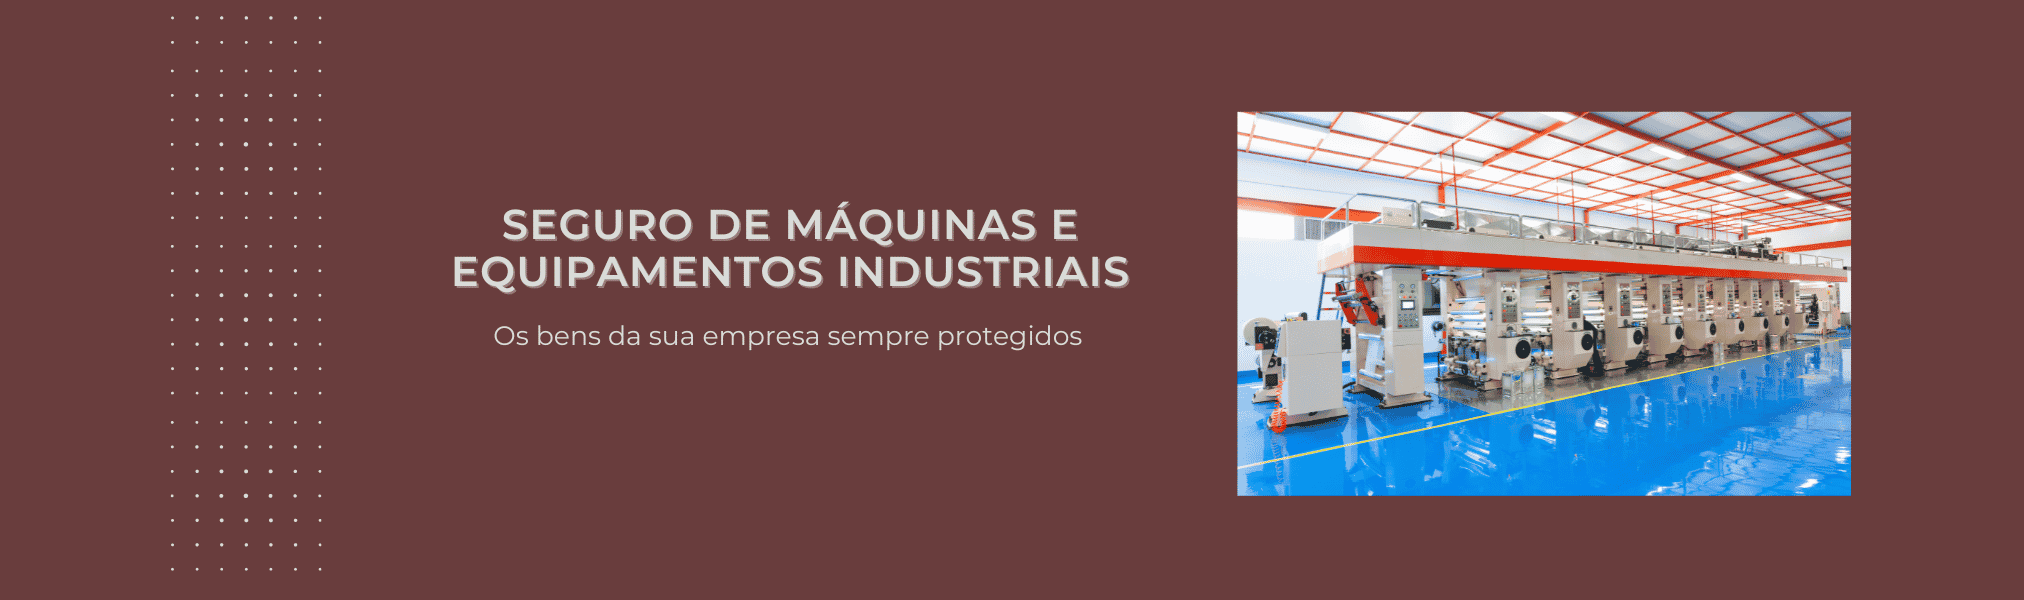 Banner Seguro de Maquinas e equipamentos industriais